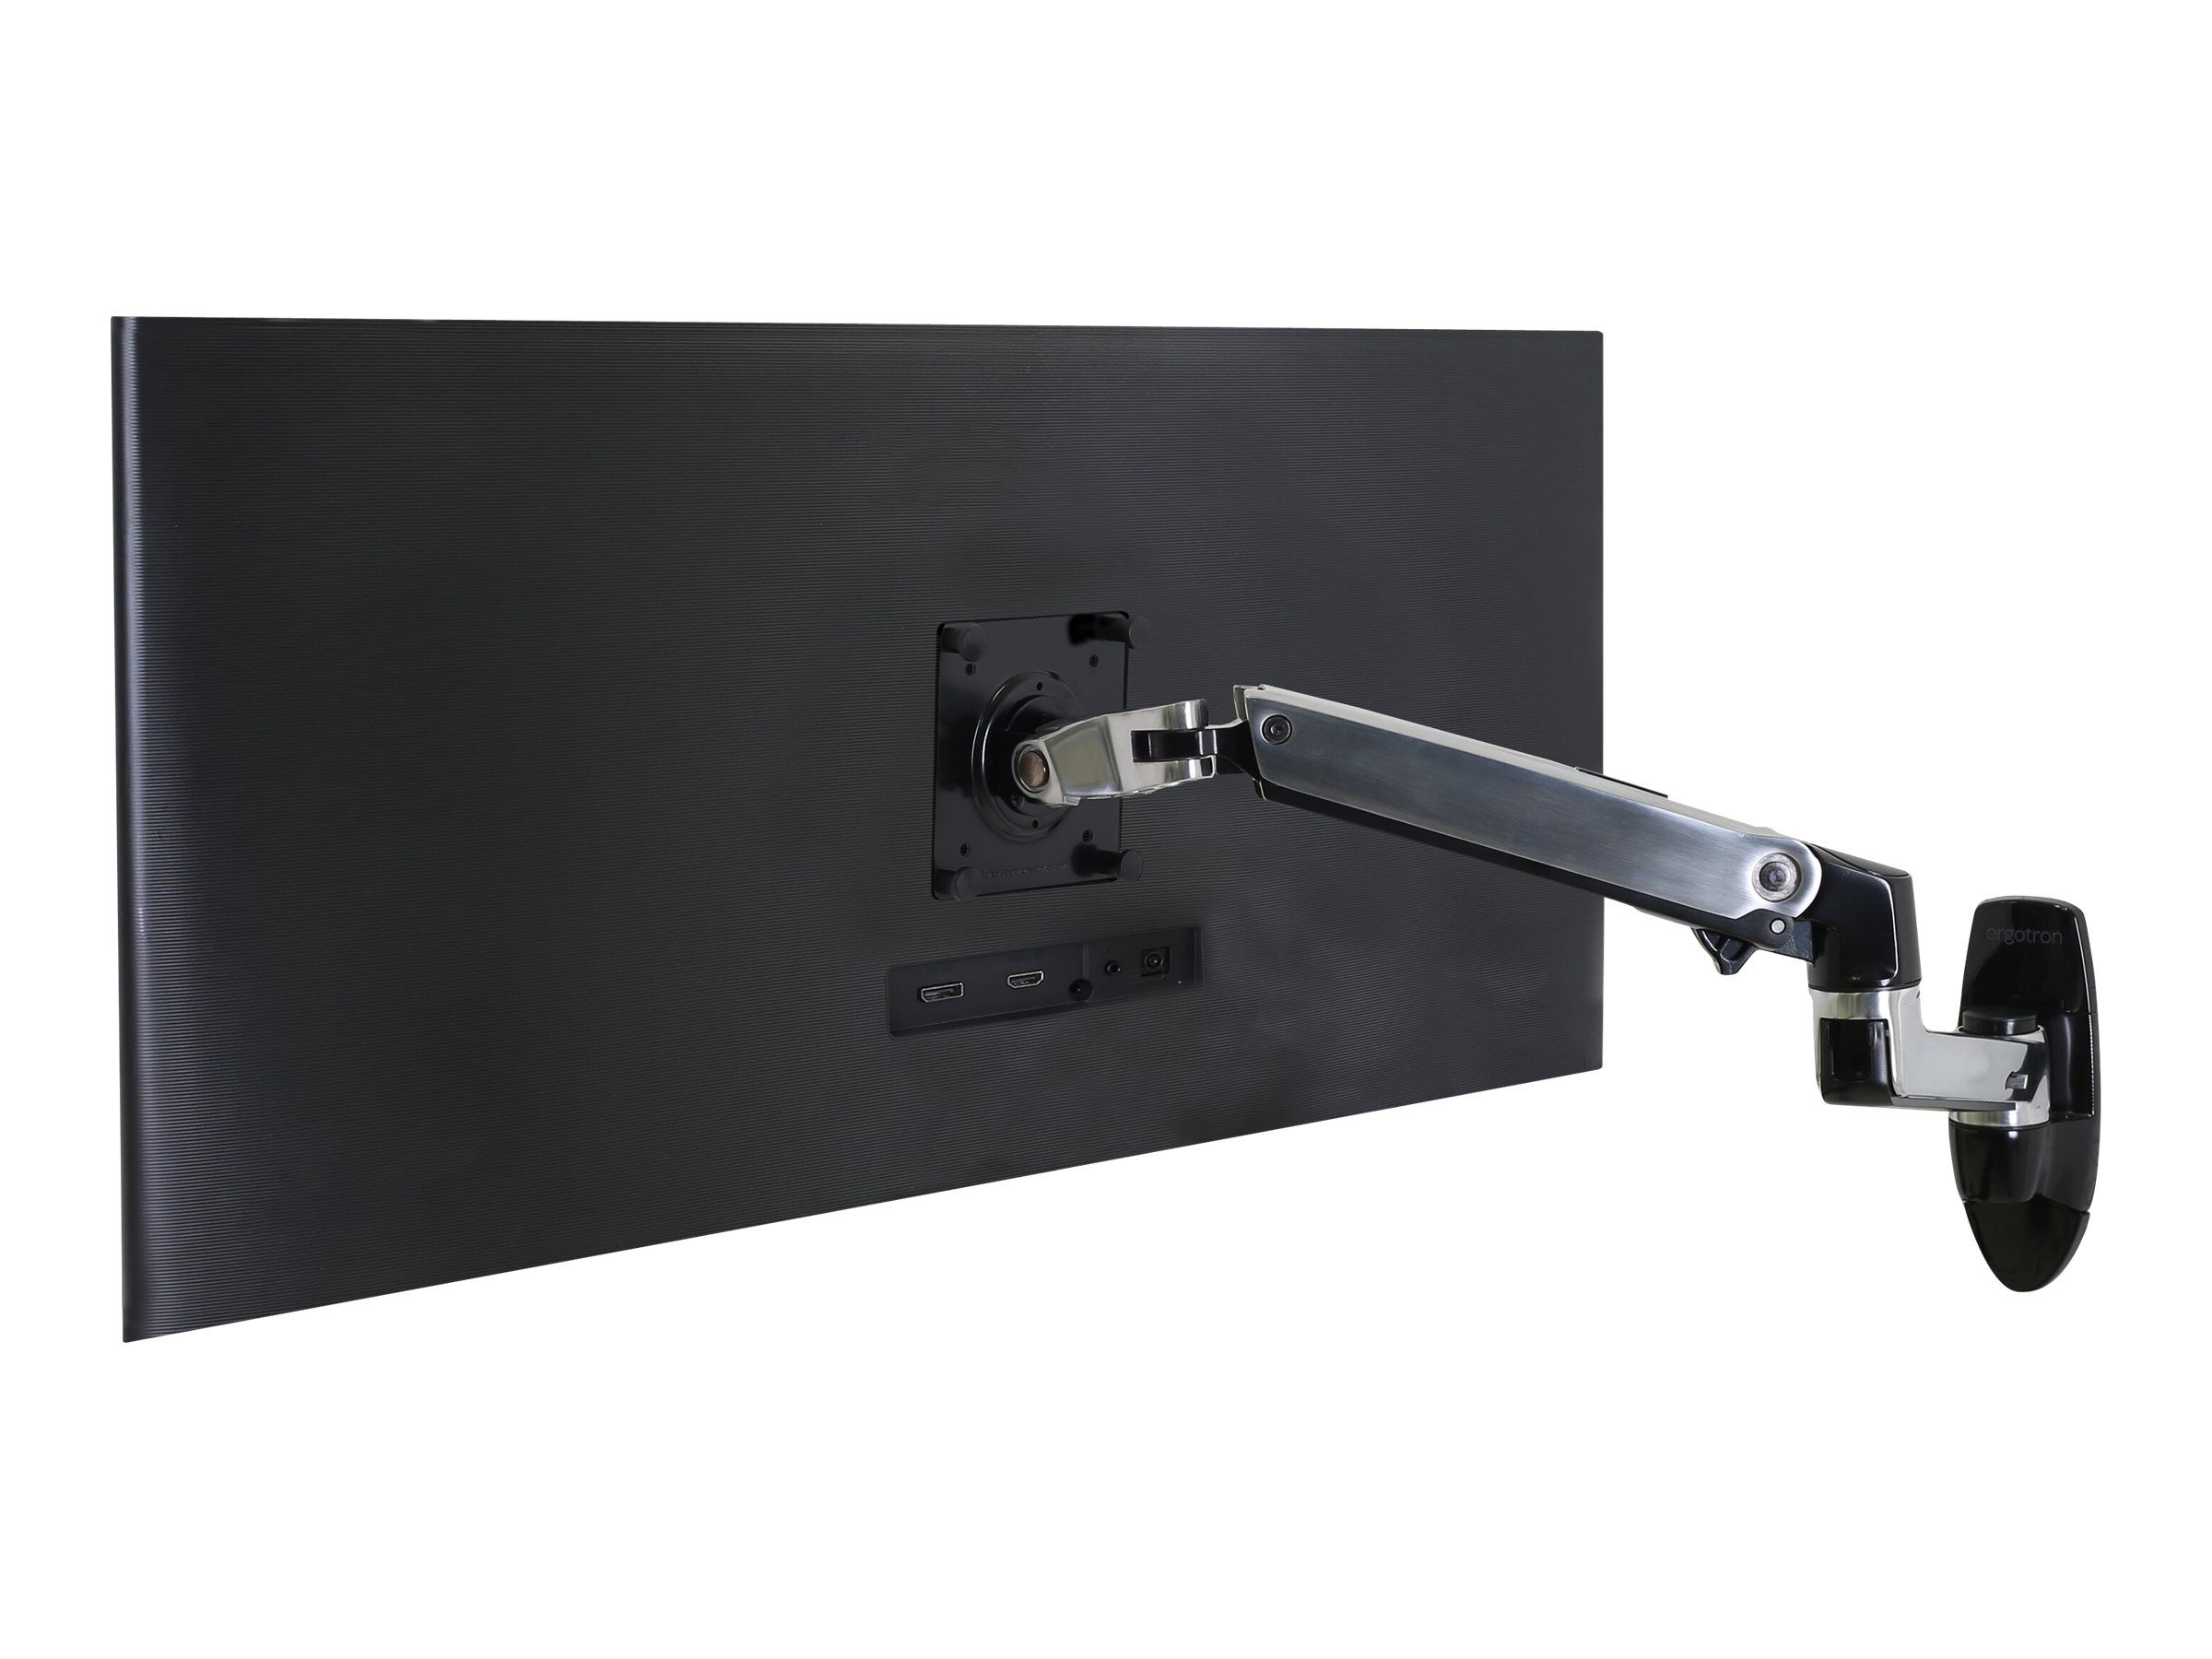 ergotron Monitor-Halterung LX 45-243-026 silber, schwarz für 1 Monitor,  Wandhalterung